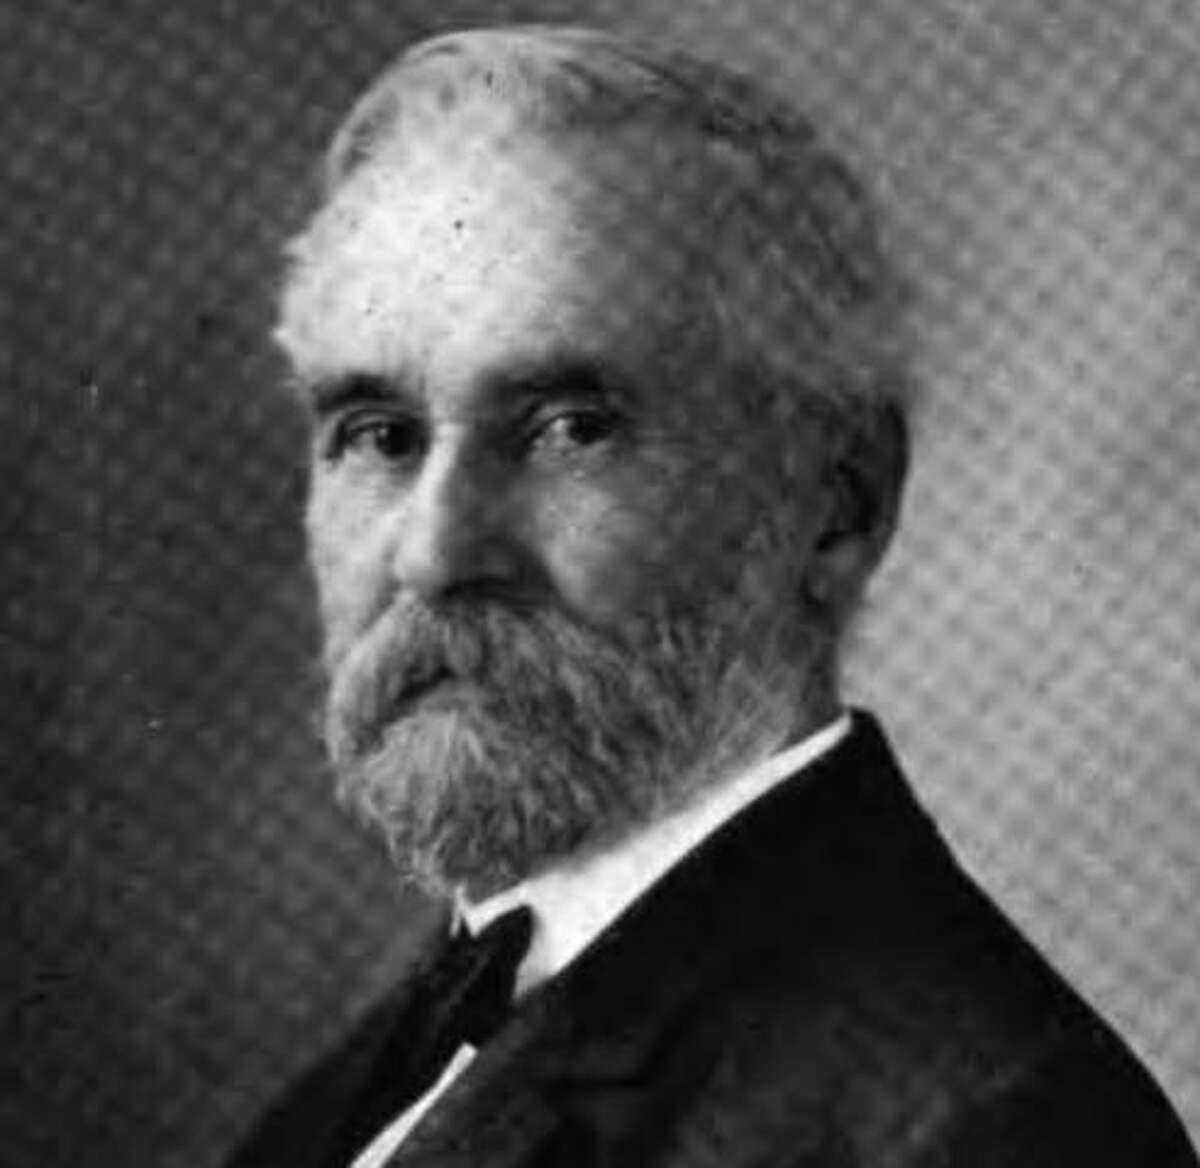 William O. Seymour